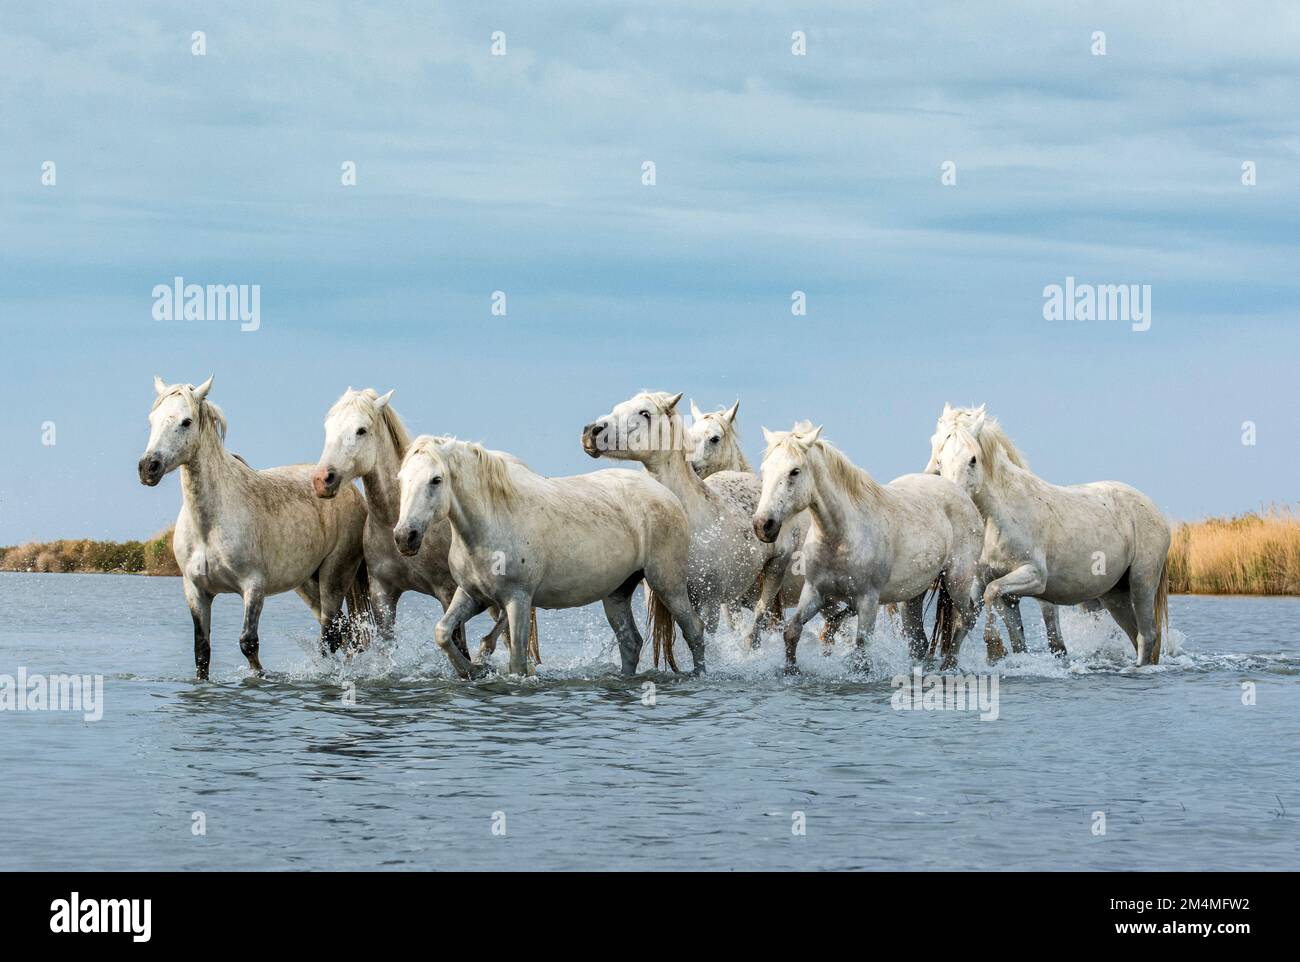 ATEMBERAUBENDE Bilder der weißen Pferde der Camargue, auch bekannt als die Pferde des Meeres, wurden von einem britischen Fotografen in der Camargue, Fr. Stockfoto